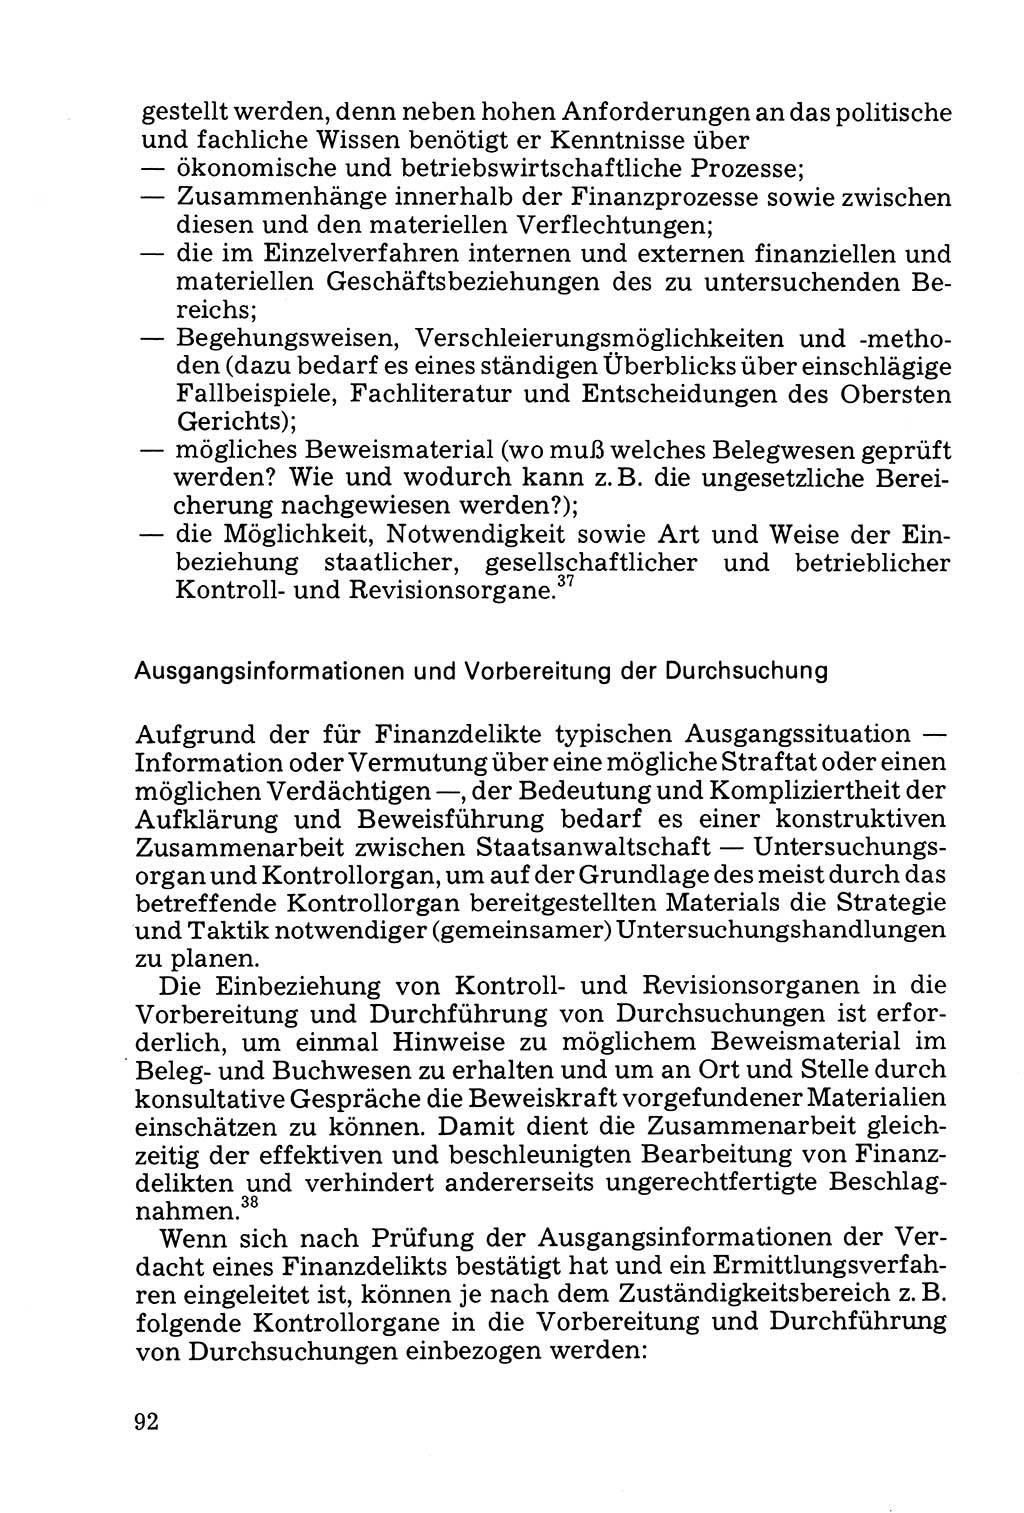 Die Durchsuchung und die Beschlagnahme [Deutsche Demokratische Republik (DDR)] 1979, Seite 92 (Durchs. Beschl. DDR 1979, S. 92)